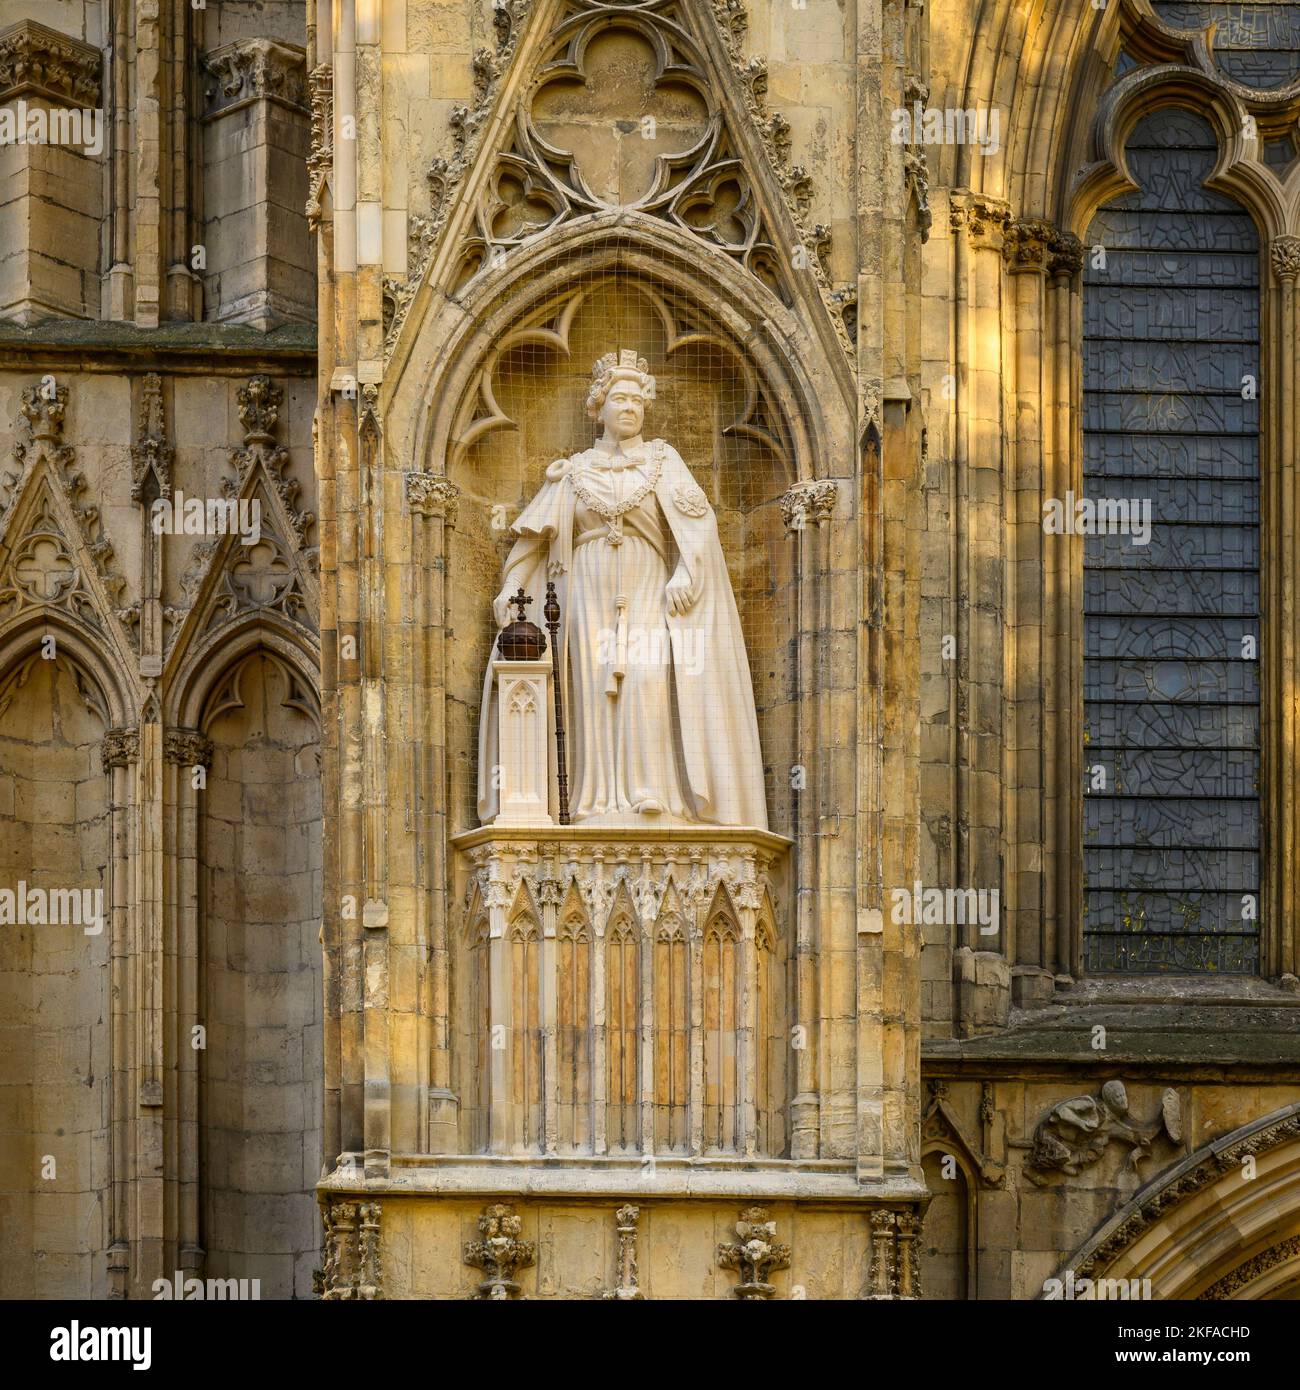 Elizabeth 2 statua di pietra calcarea in piedi su alta nicchia indossando abiti cerimoniali (orb & scetter) - fronte ovest, York Minster, North Yorkshire, Inghilterra, Regno Unito. Foto Stock